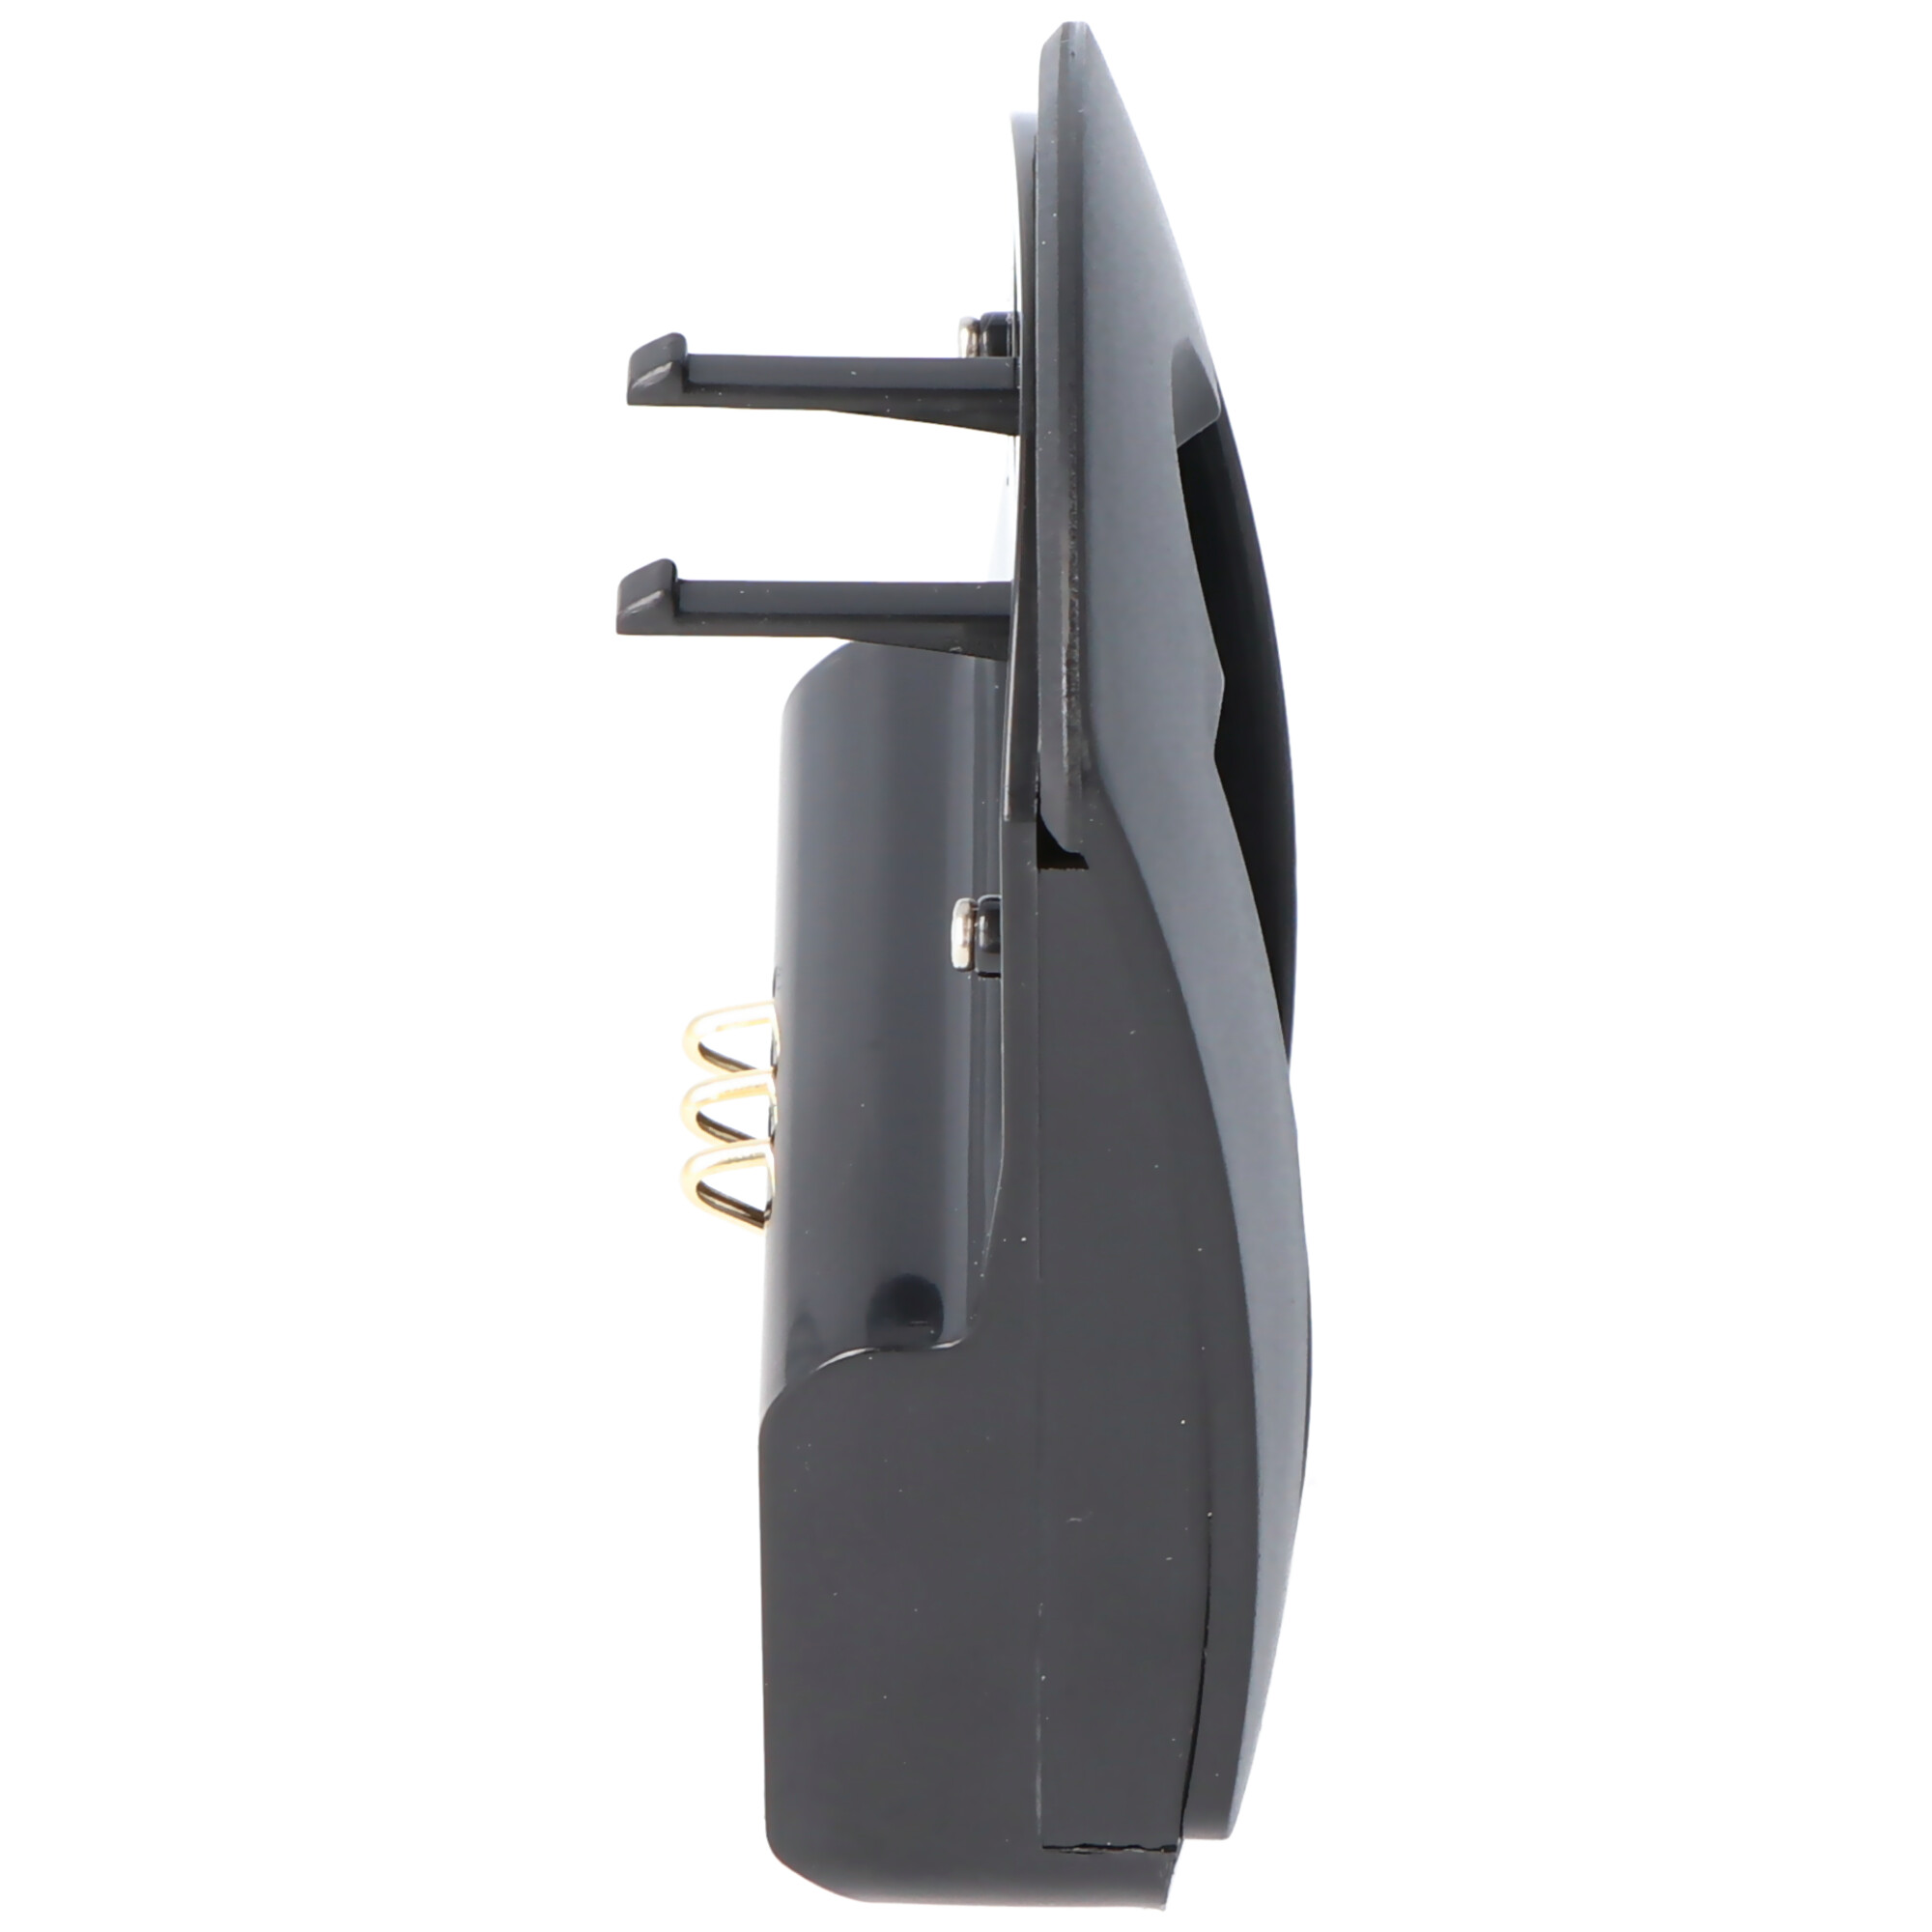 AccuCell Ladegerät passend für den Akku Sony NP-BX1, Sony CYBER-SHOT DSC-RX100/B, CYBER-SHOT DSC-RX100